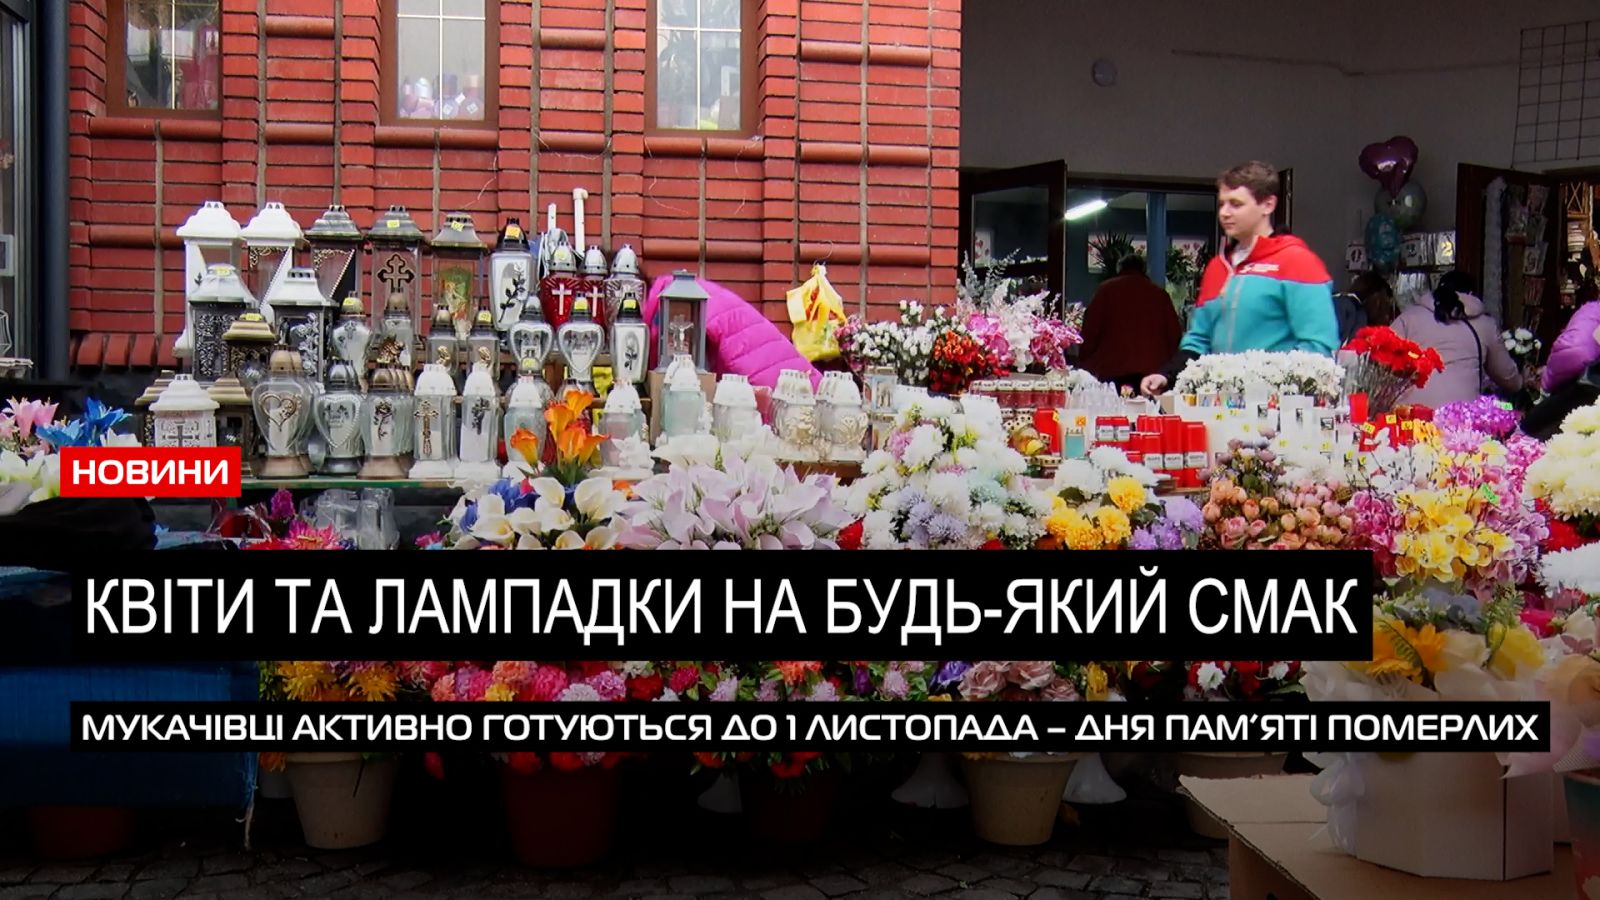  Свічки від 6-ти гривень: яка вартість атрибутів до Дня пам’яті цьогоріч в Мукачеві (ВІДЕО) 0